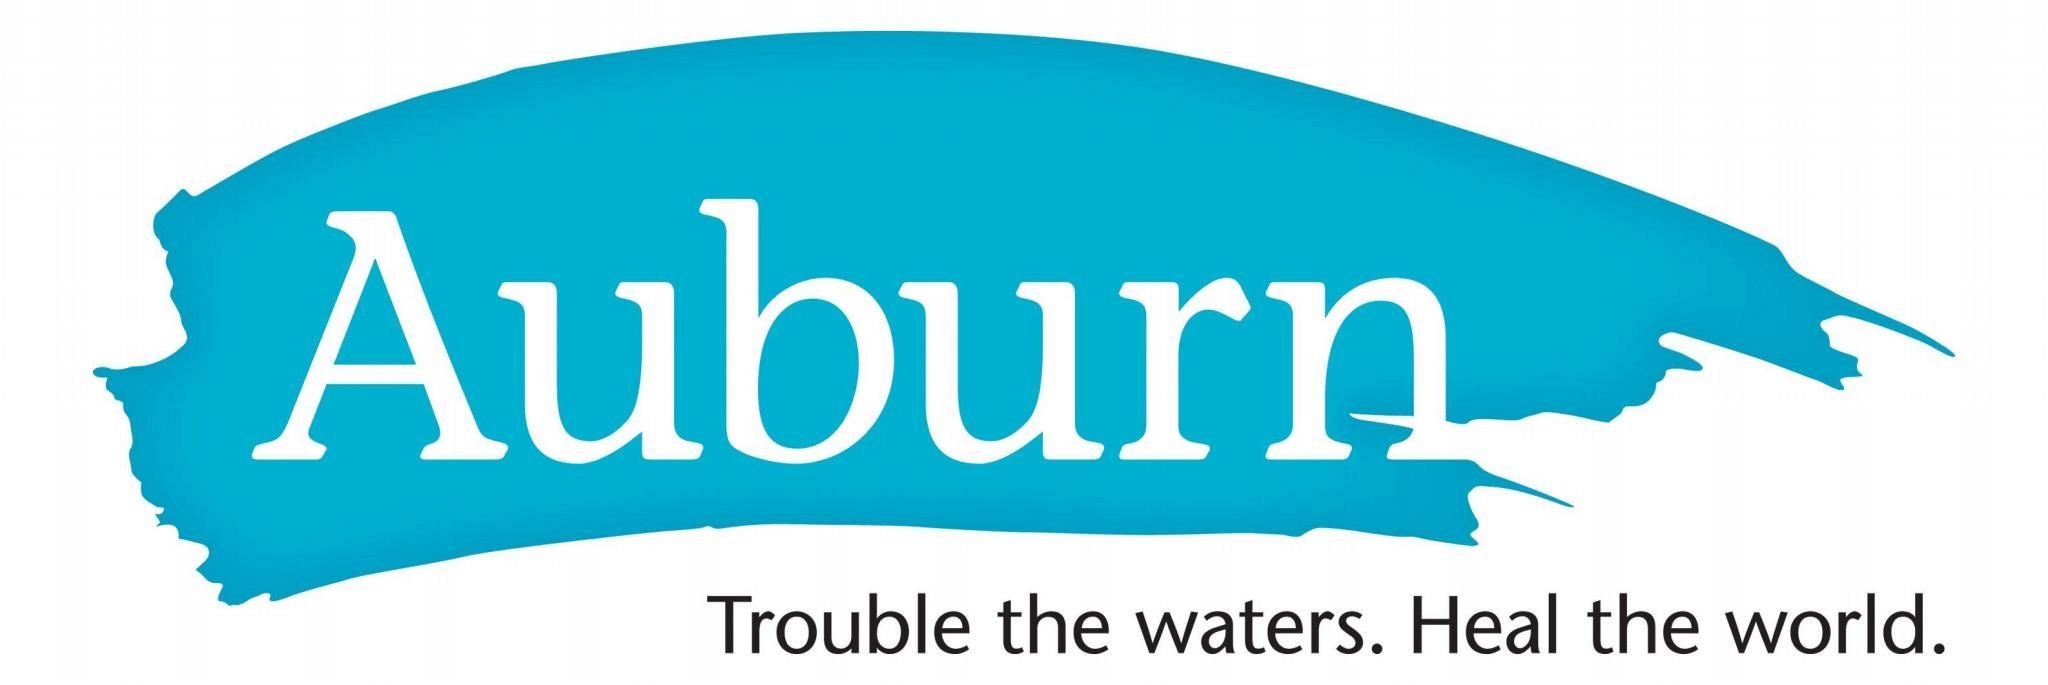 Auburn - Logo